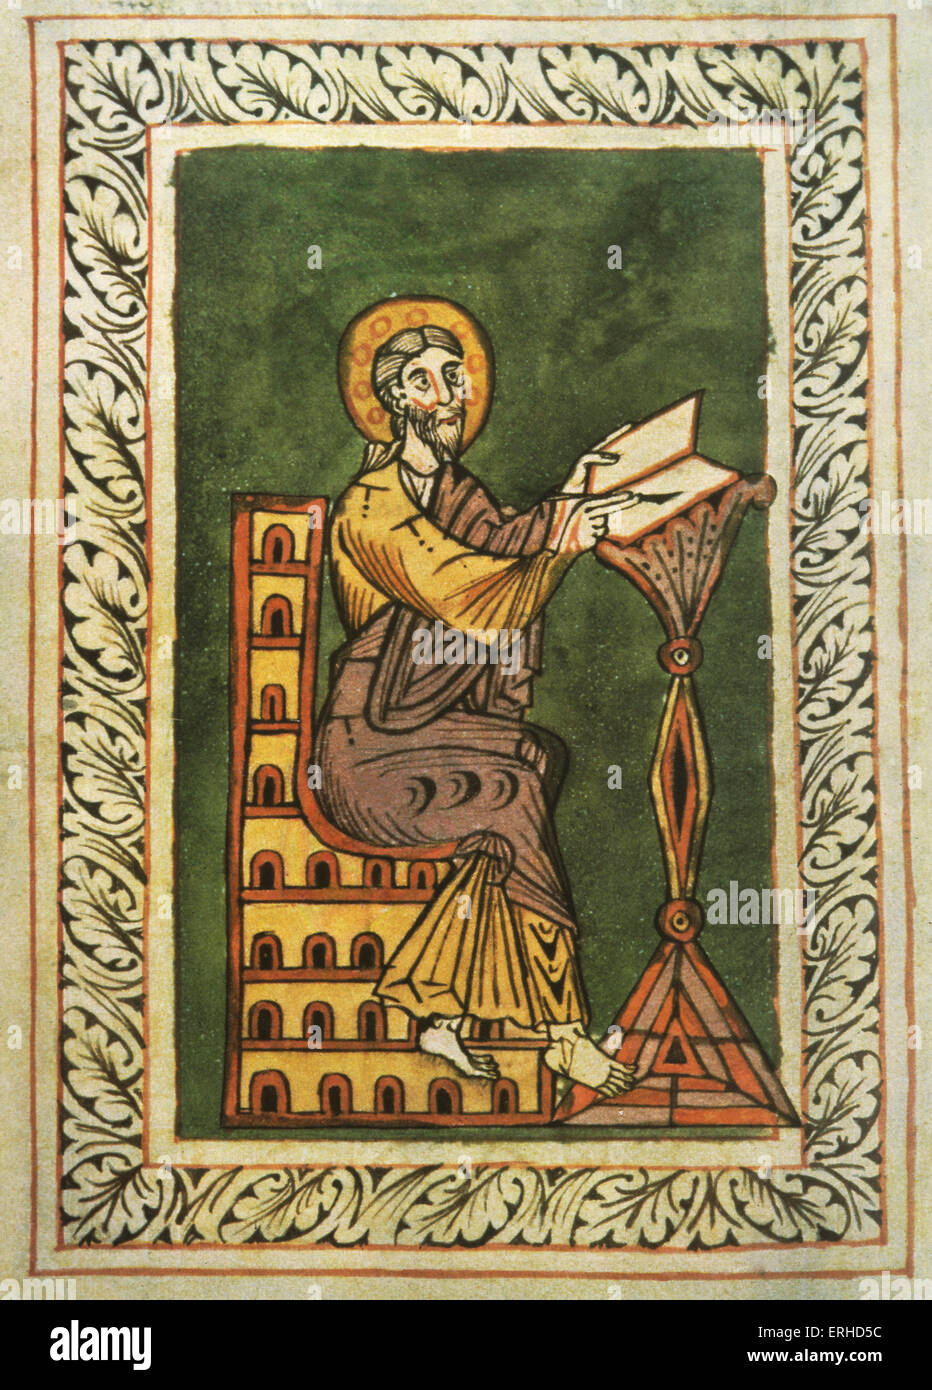 Mittelalterliche Malerei o Johannes der Evangelist des 12. Jahrhunderts schwäbischen beleuchtet Manuskript zeigt St Johannes schreiben am Schreibtisch Stockfoto